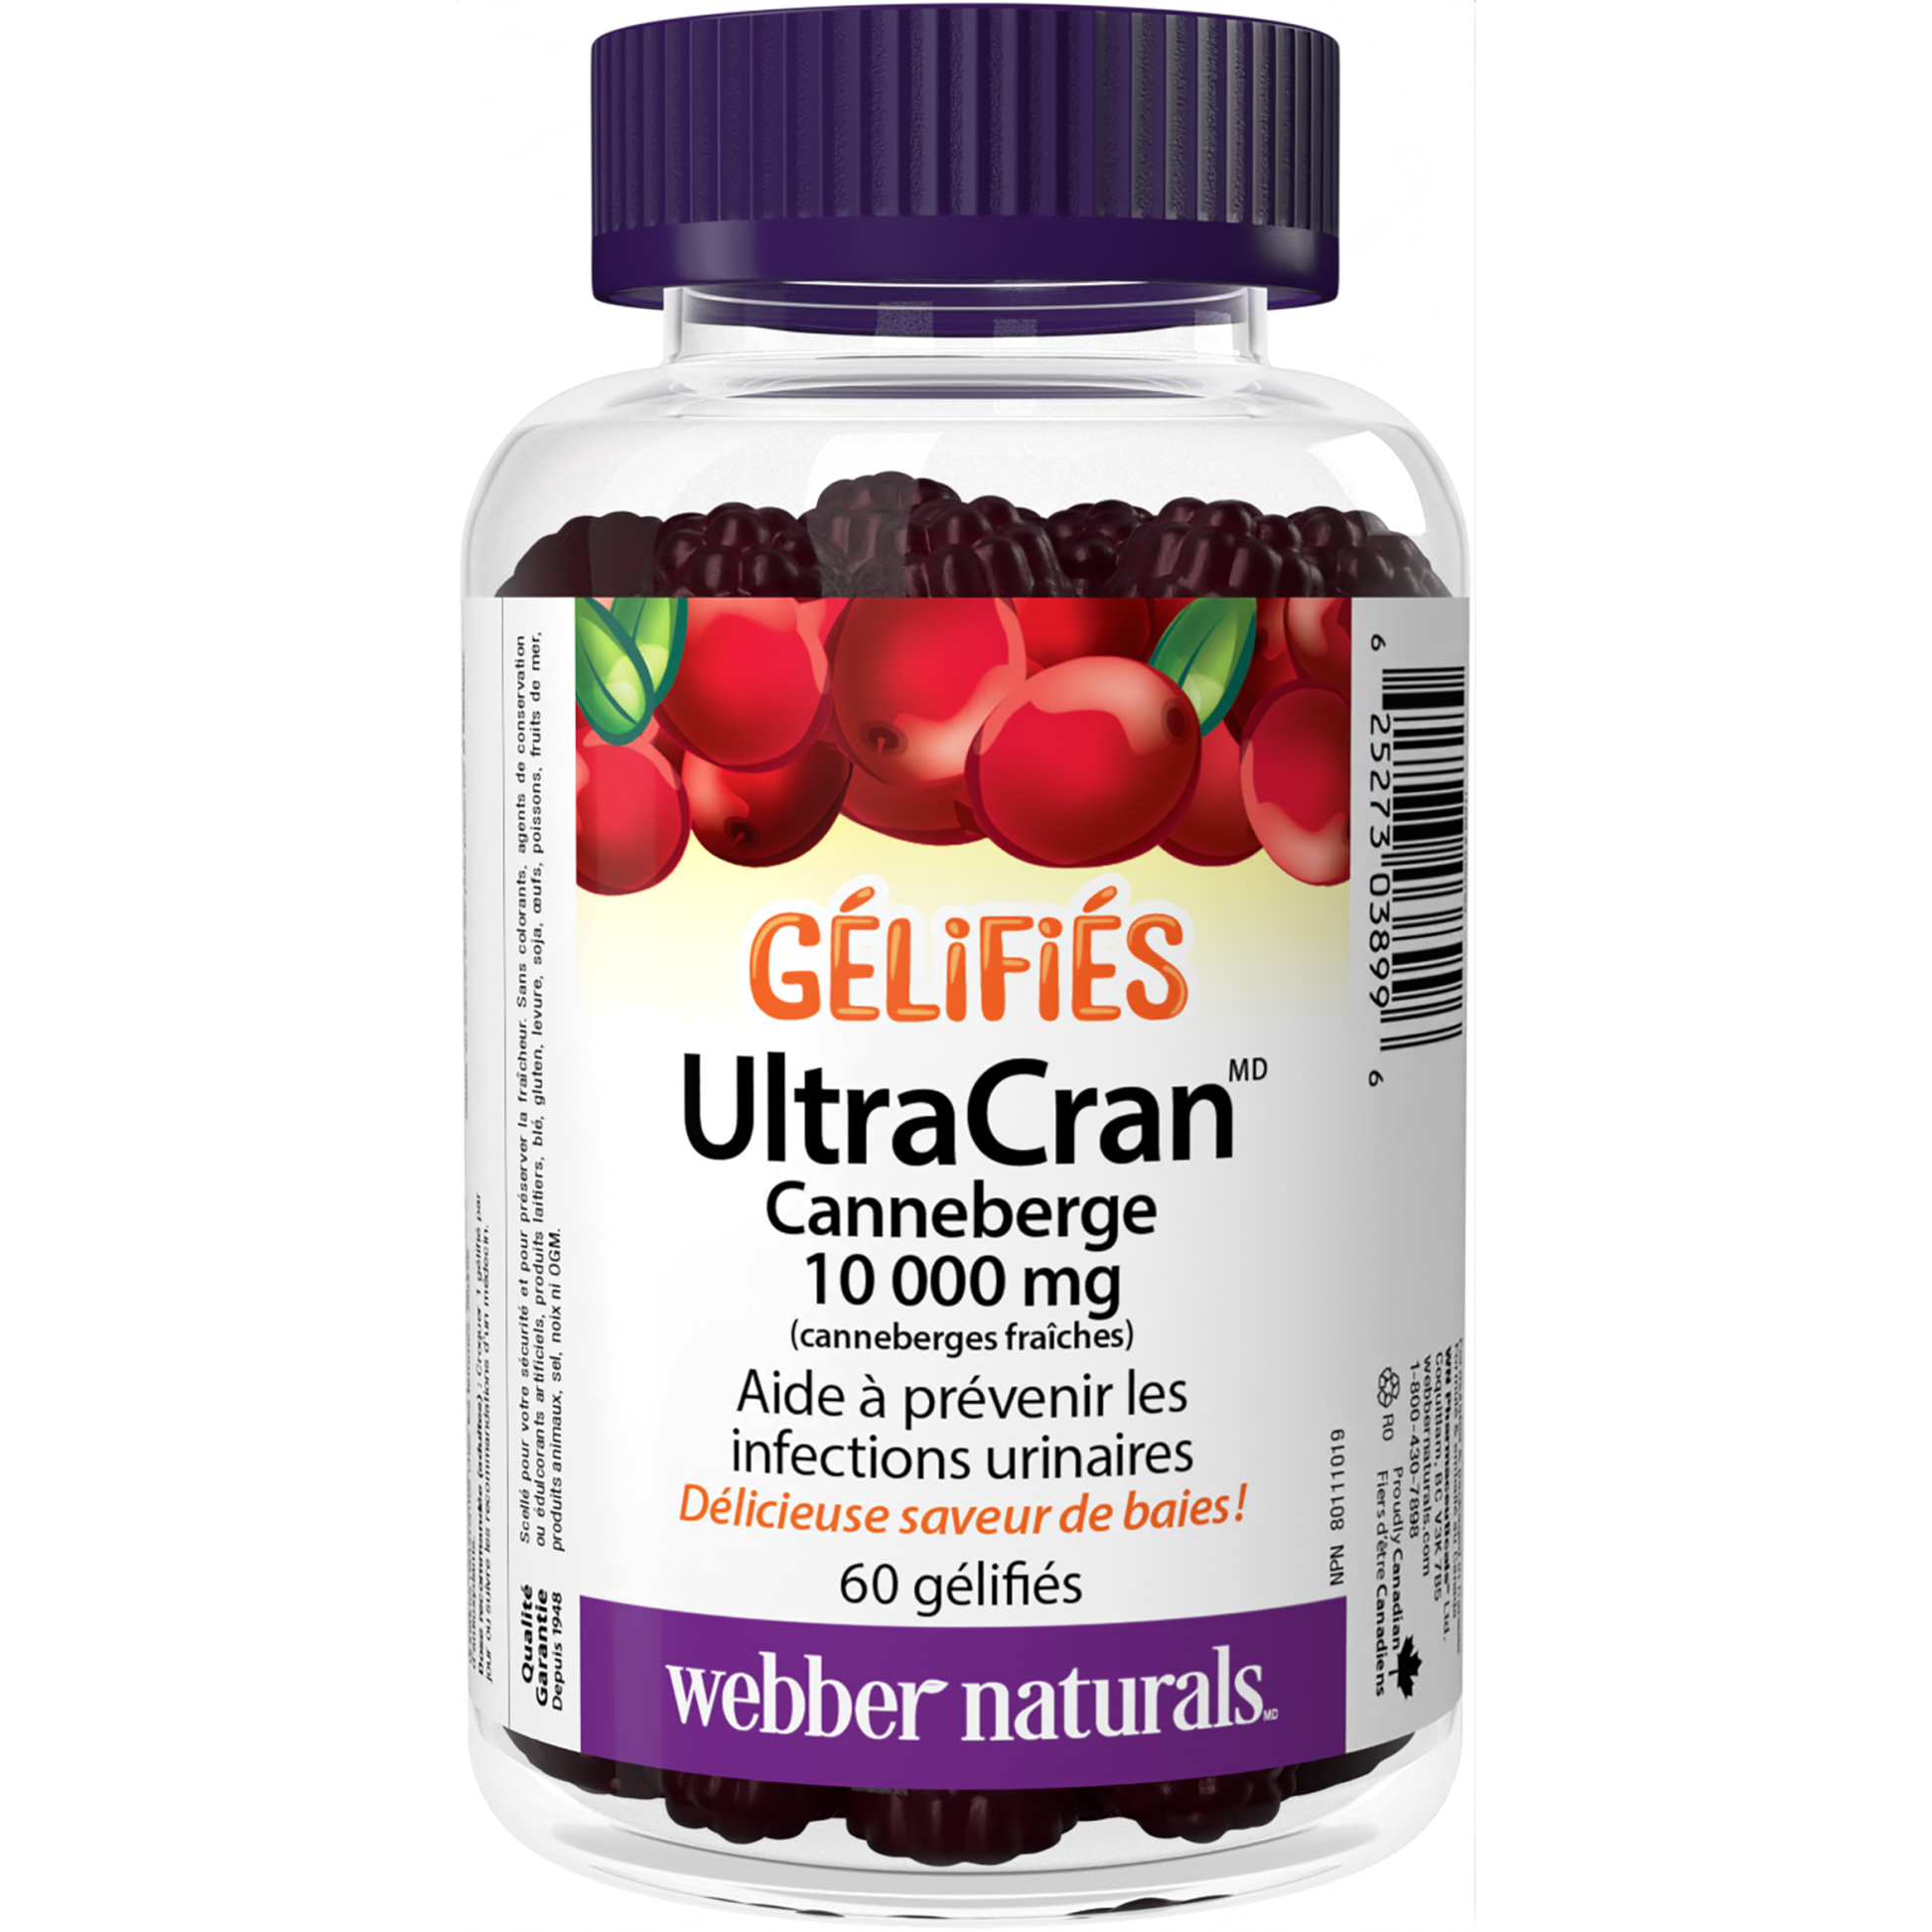 Canneberge UltraCran 10 000 mg Gélifiés for Webber Naturals|v|hi-res|WN3899